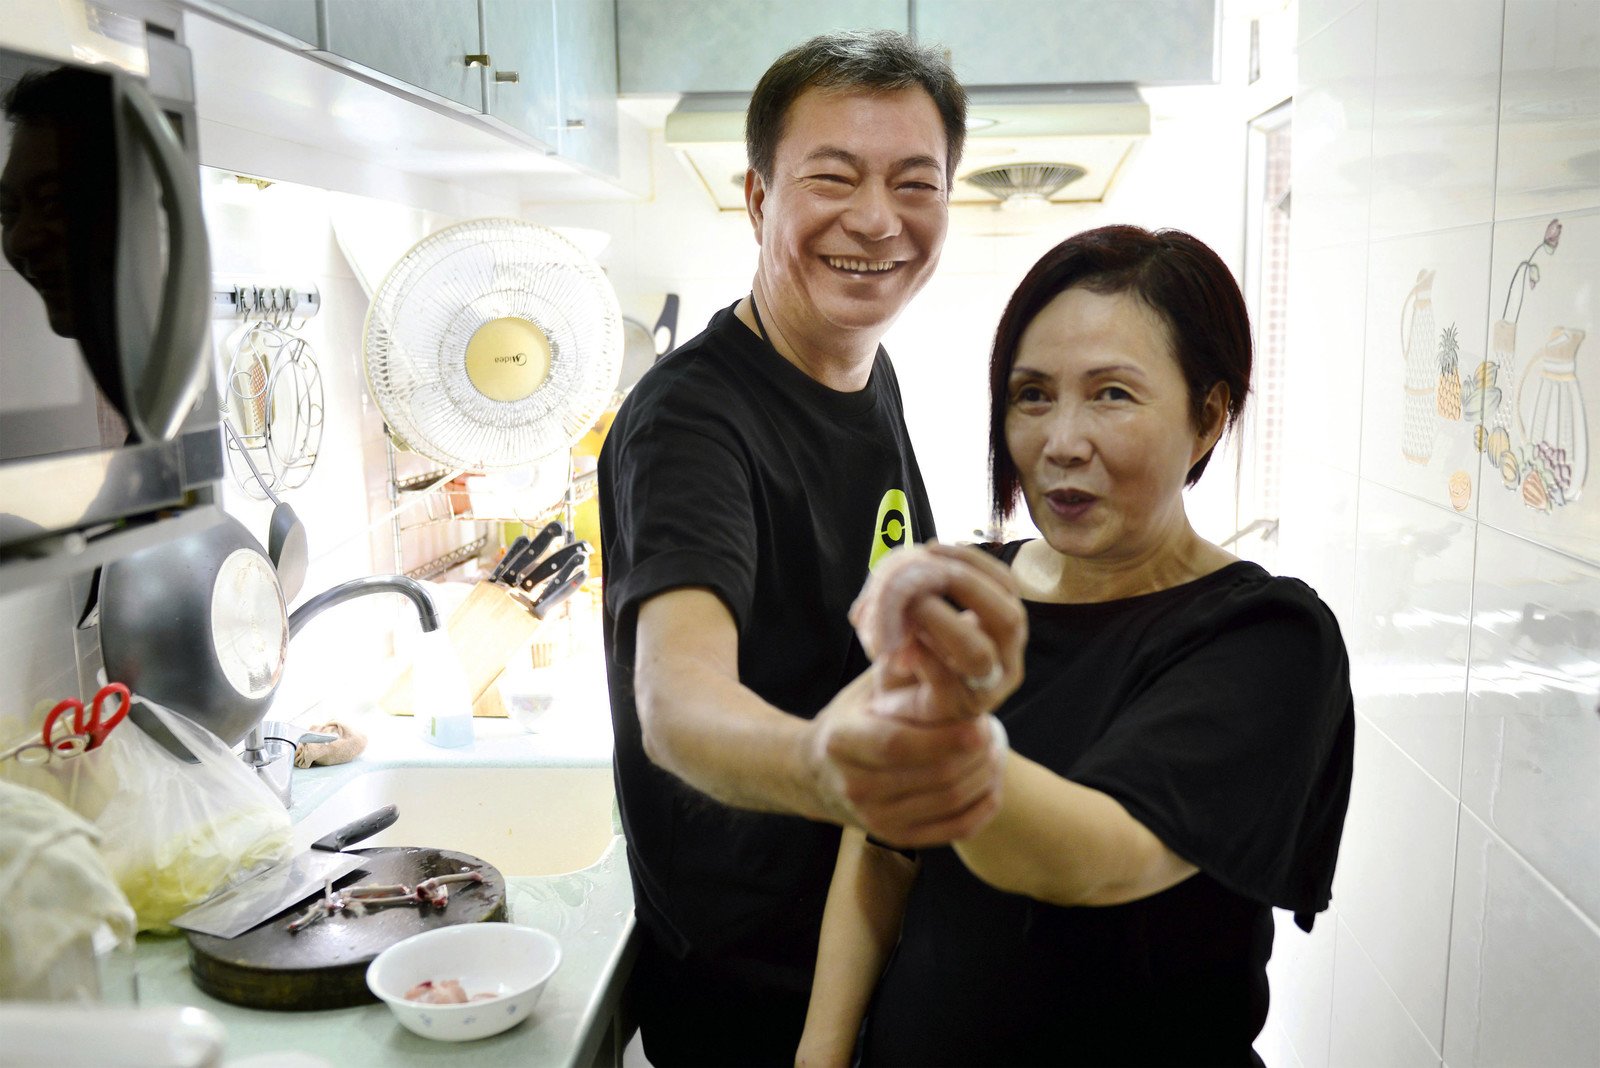 樂施大使廖偉雄先生訪談「家餸」短片中的其中一位受訪者–失明母親Susan，並與她一起煮無骨雞翼。